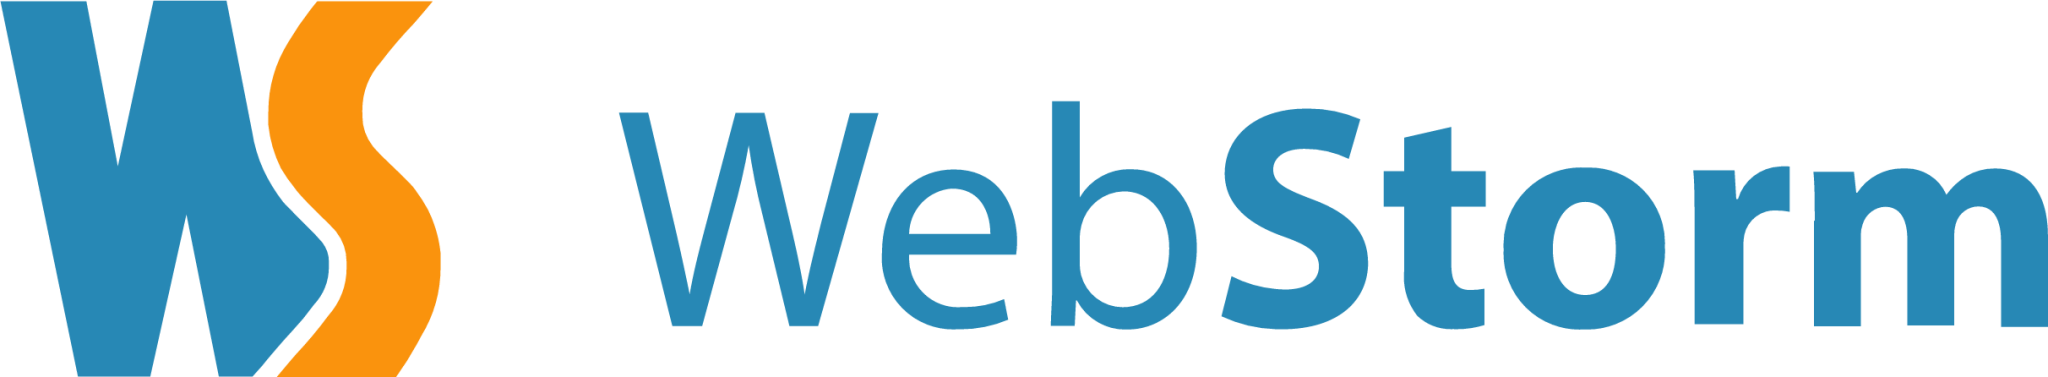 webstorm original wordmark icon